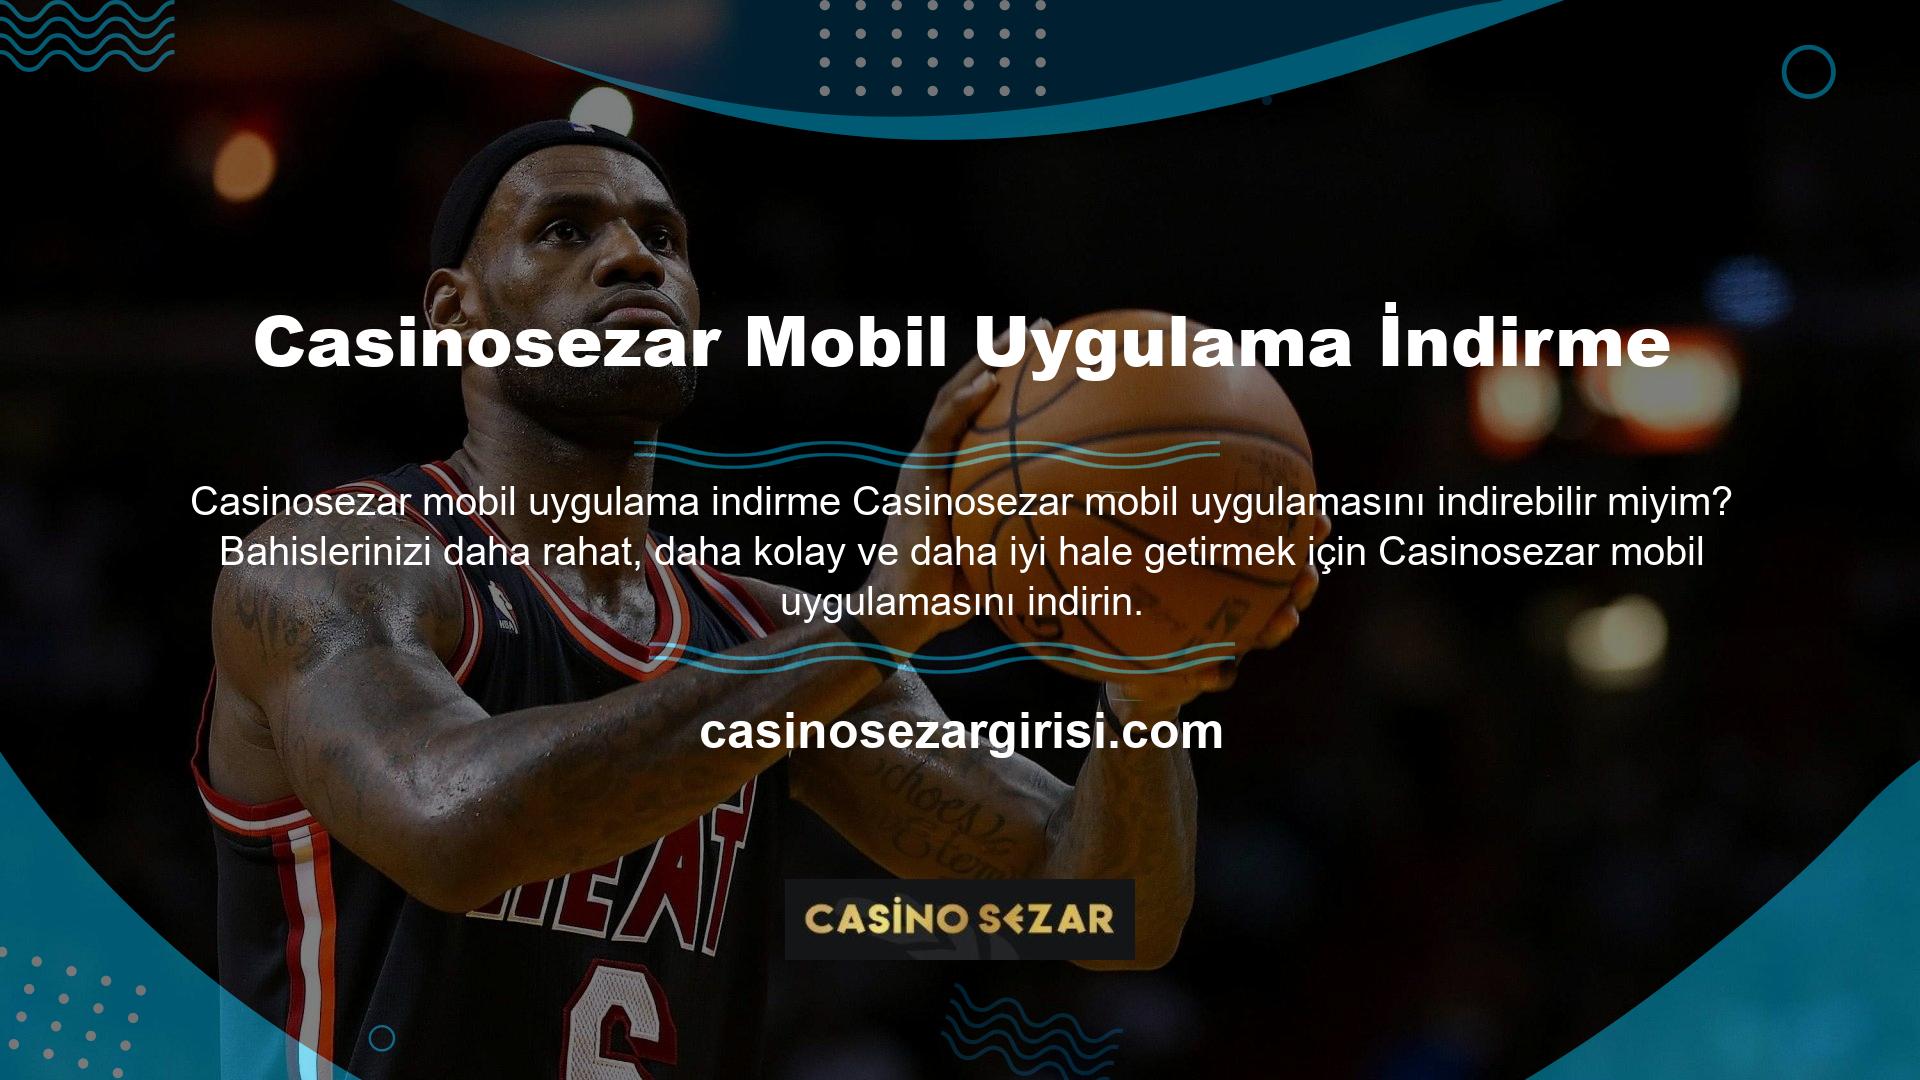 Casinosezar mobil uygulama hizmetleri Android ve IOS cihazlarla uyumludur